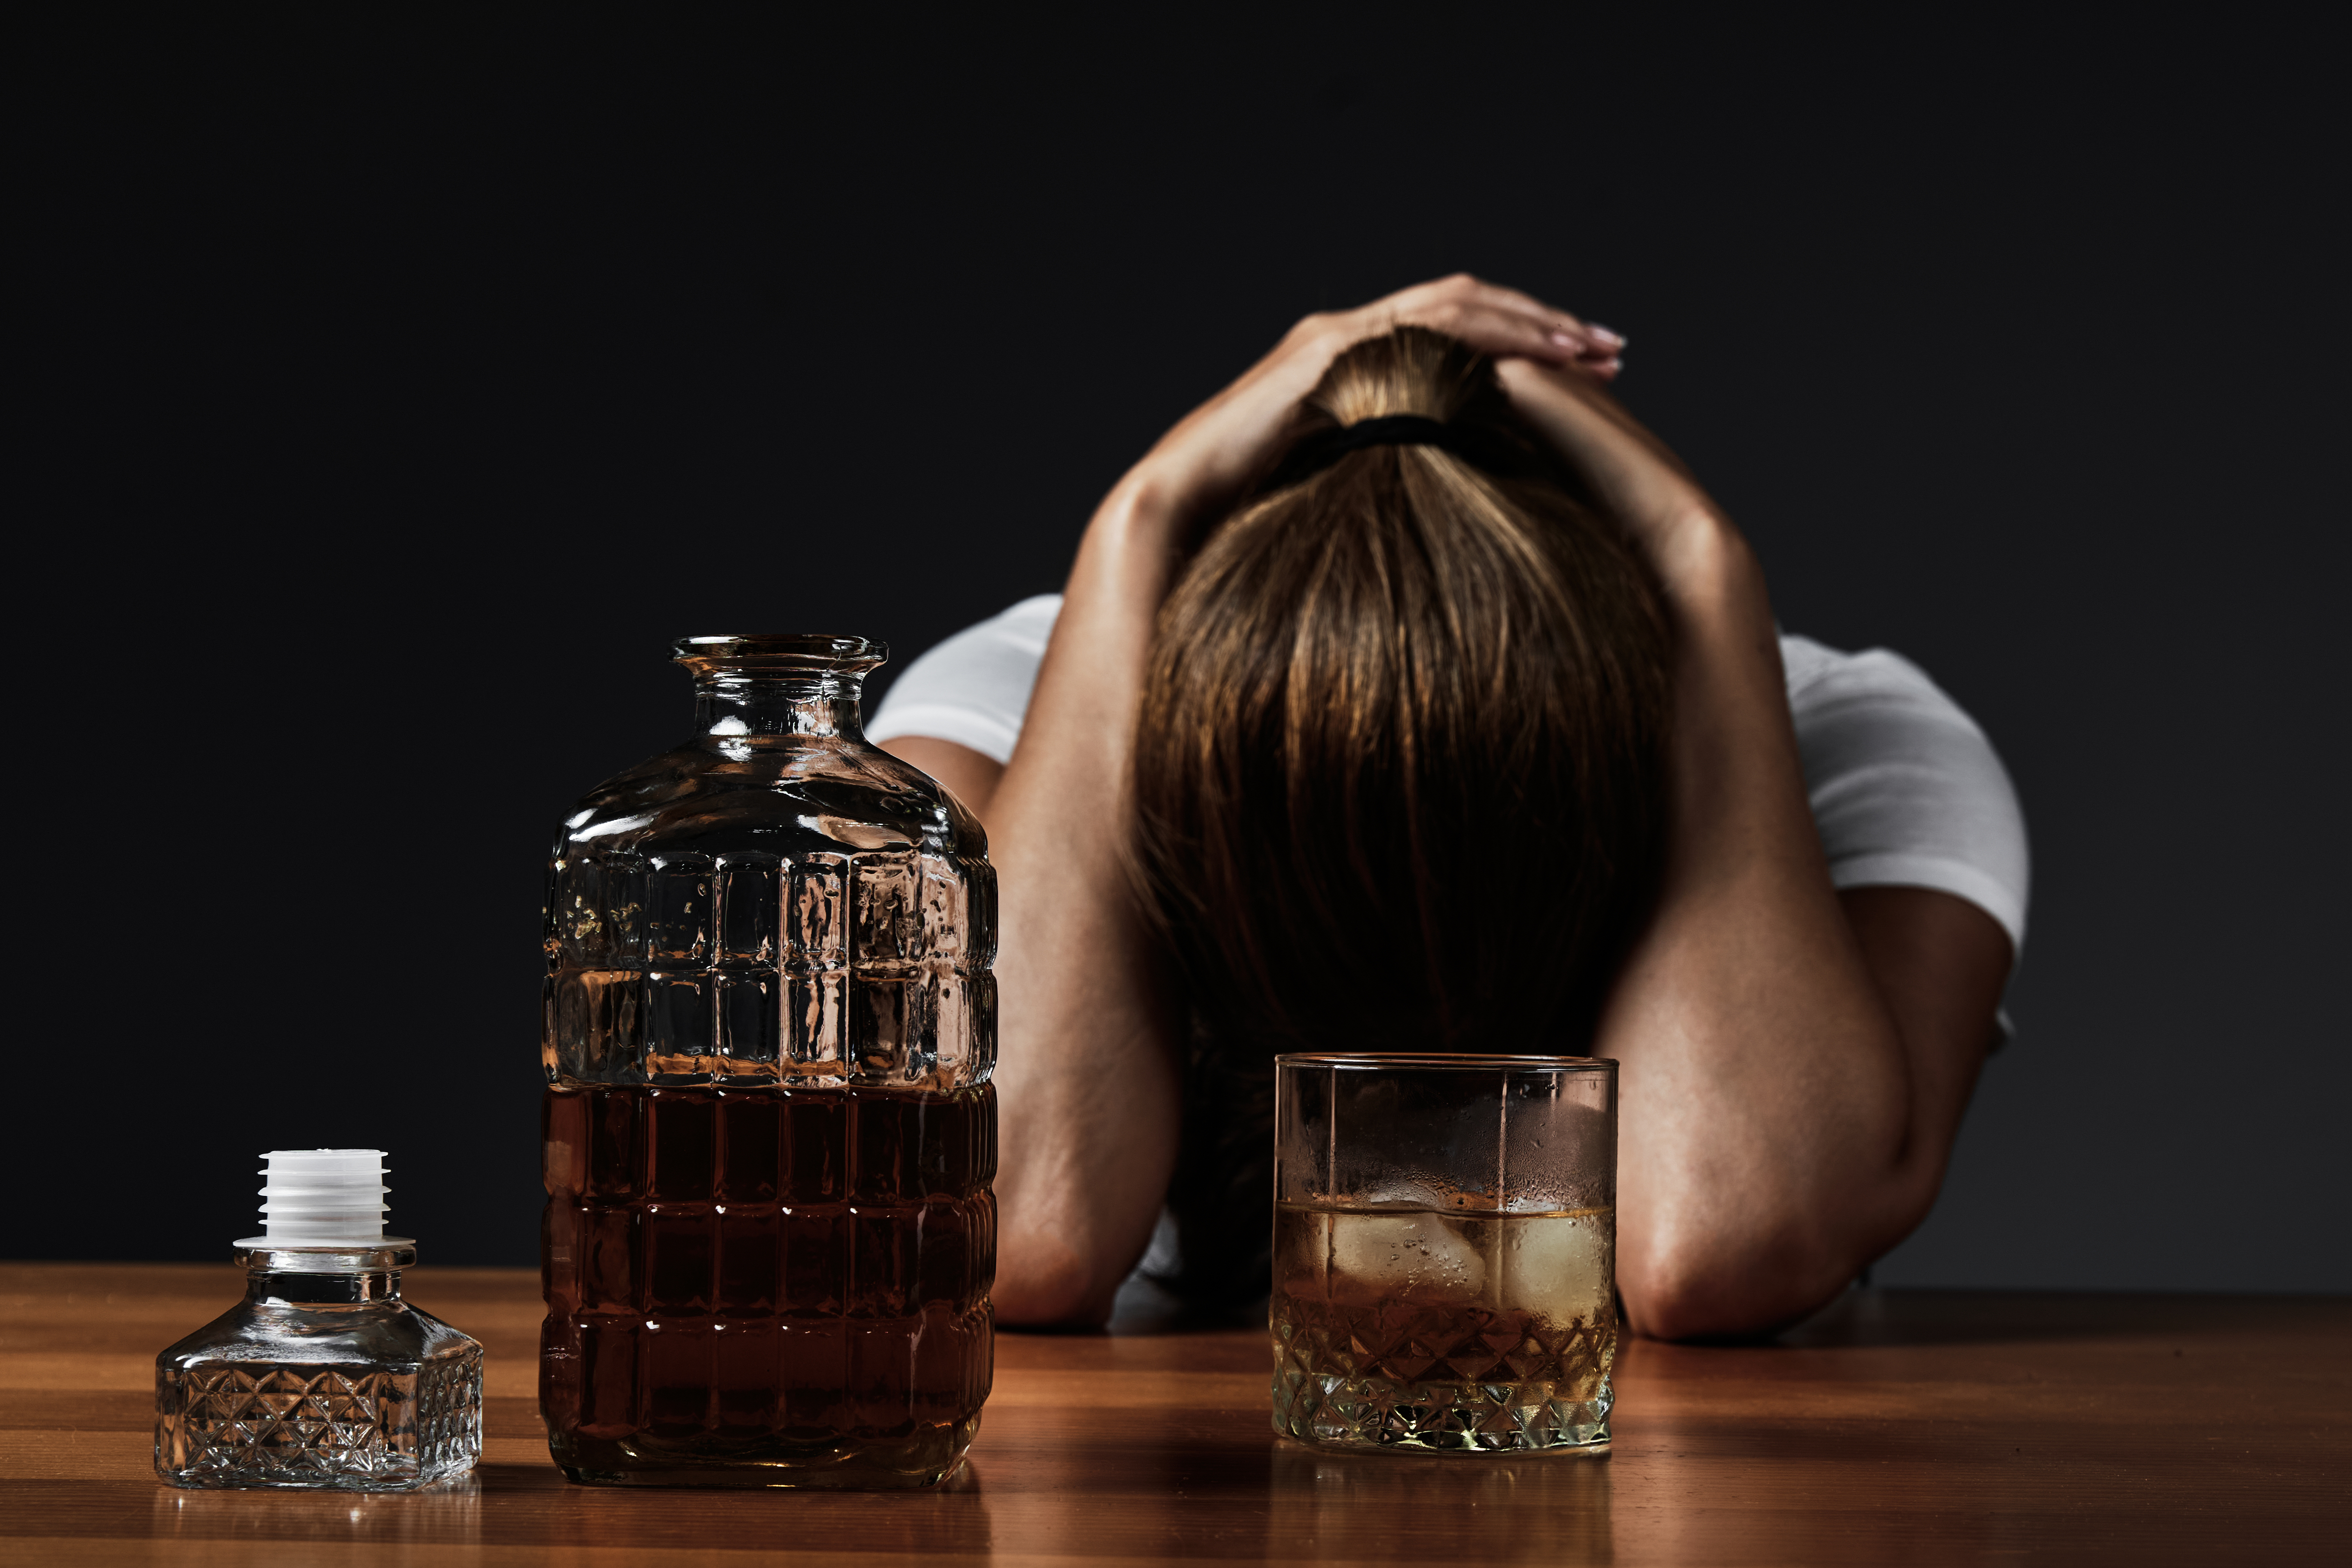 El consumo en exceso de alcohol es uno de los factores que aumentan el riesgo